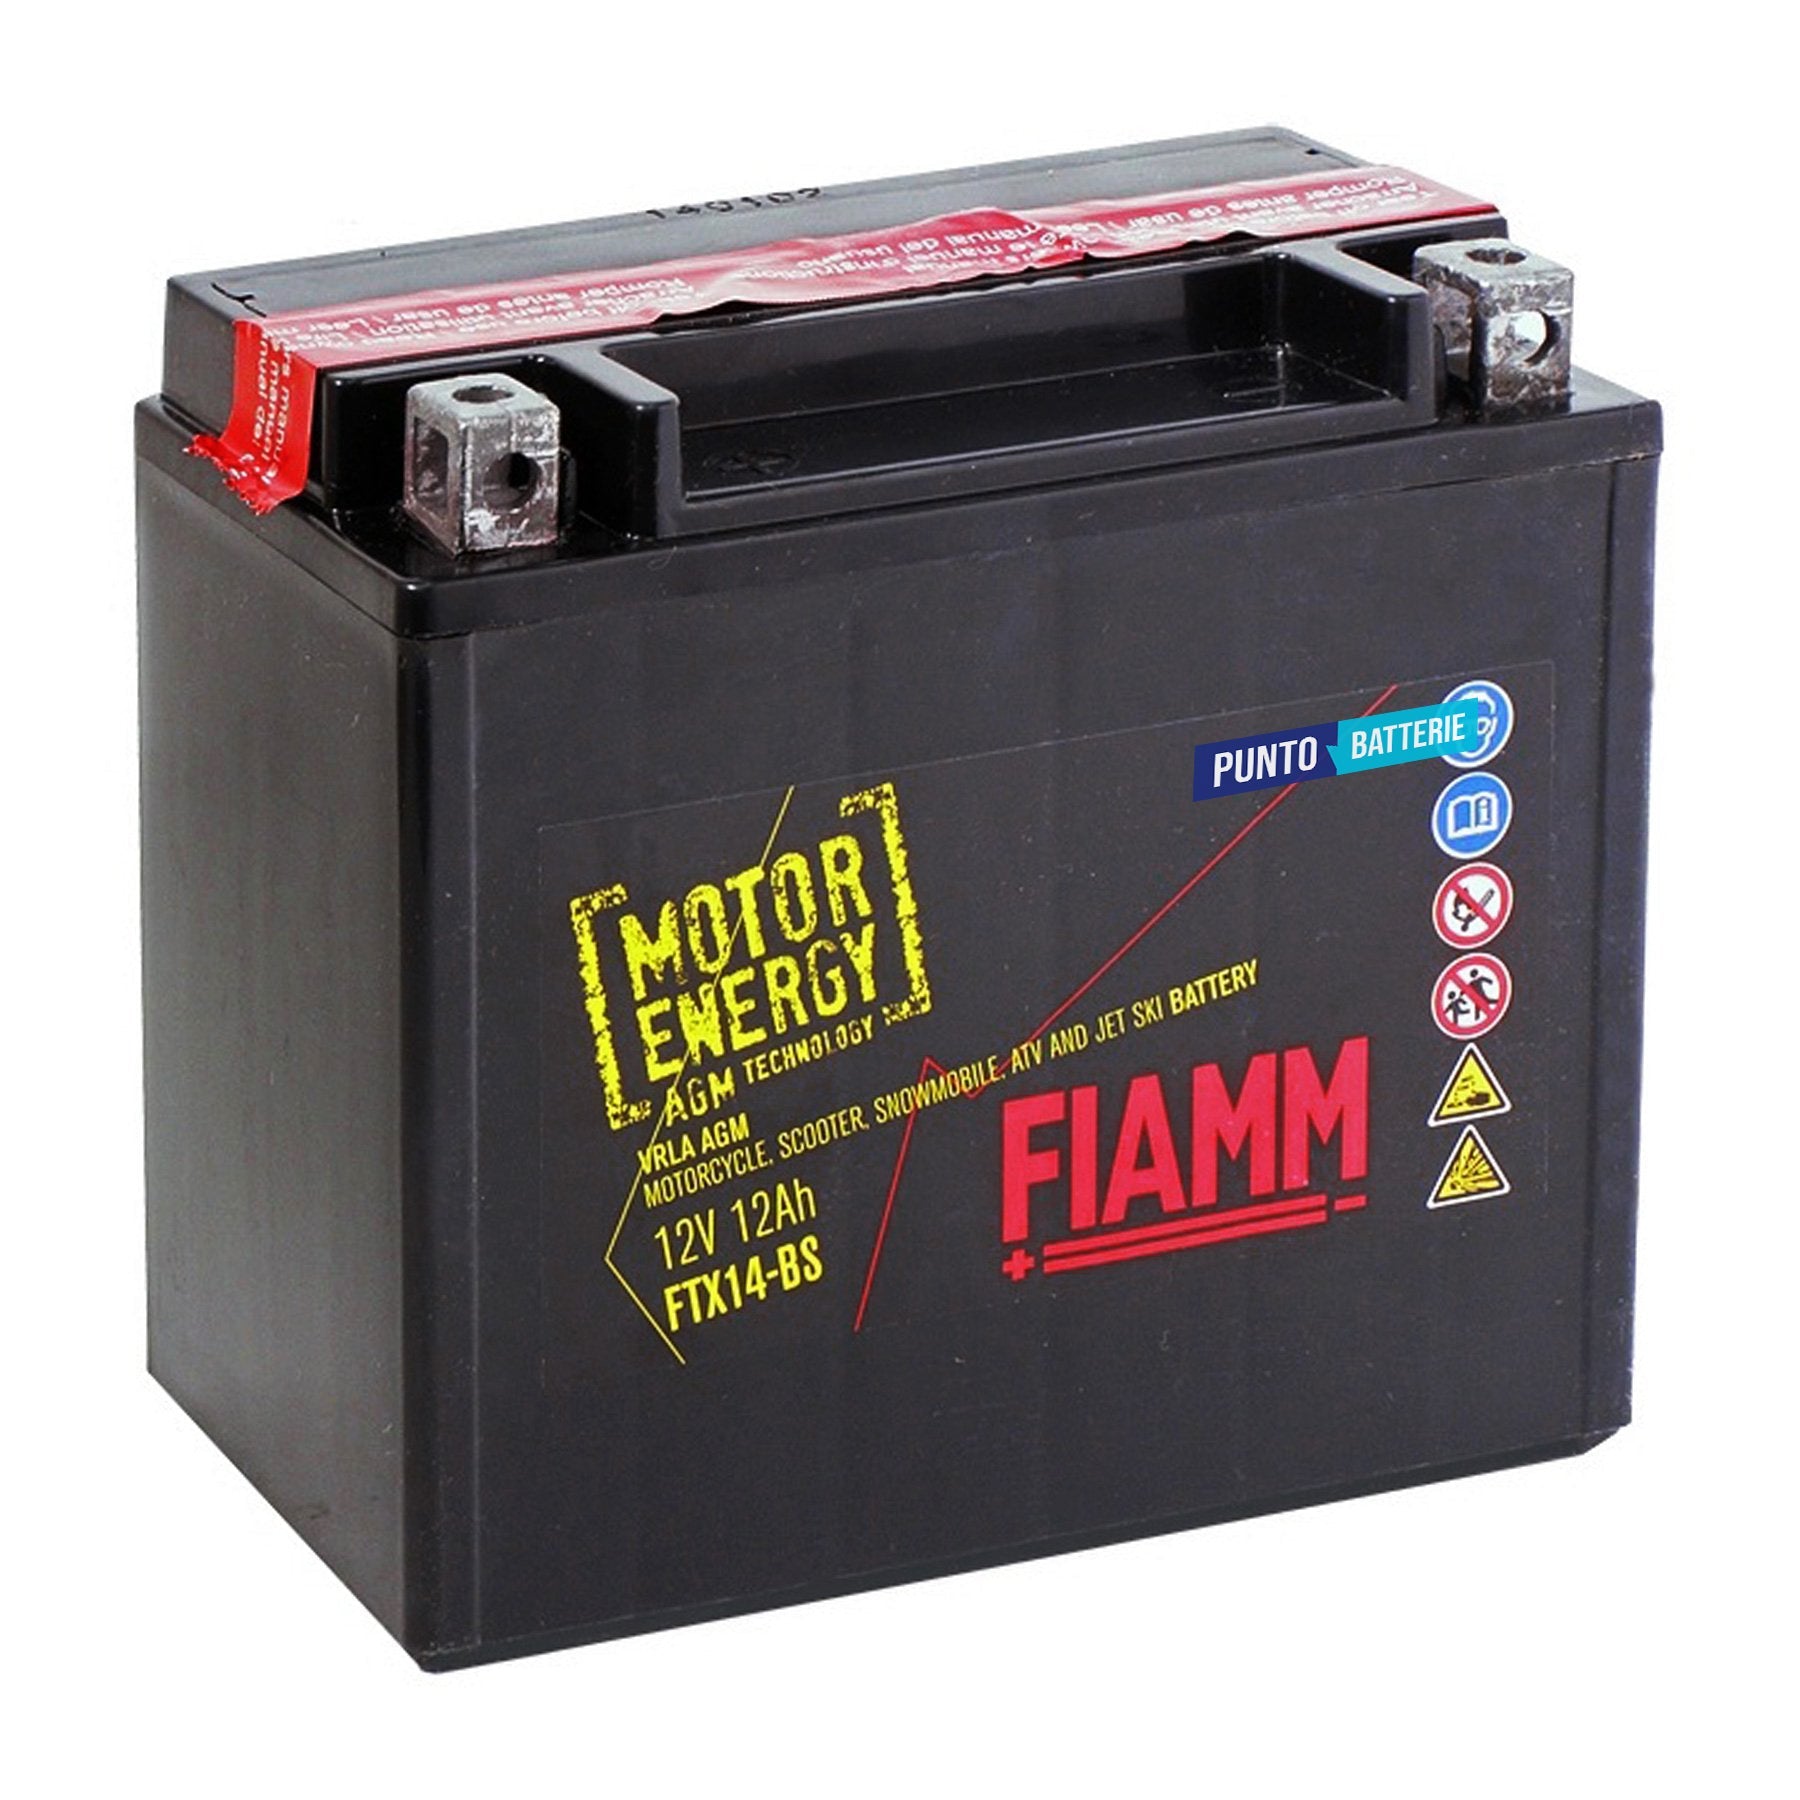 Batteria originale Fiamm Motor Energy AGM FTX14-BS, dimensioni 150 x 87 x 145, polo positivo a sinistra, 12 volt, 12 amperora, 190 ampere. Batteria per moto, scooter e powersport.